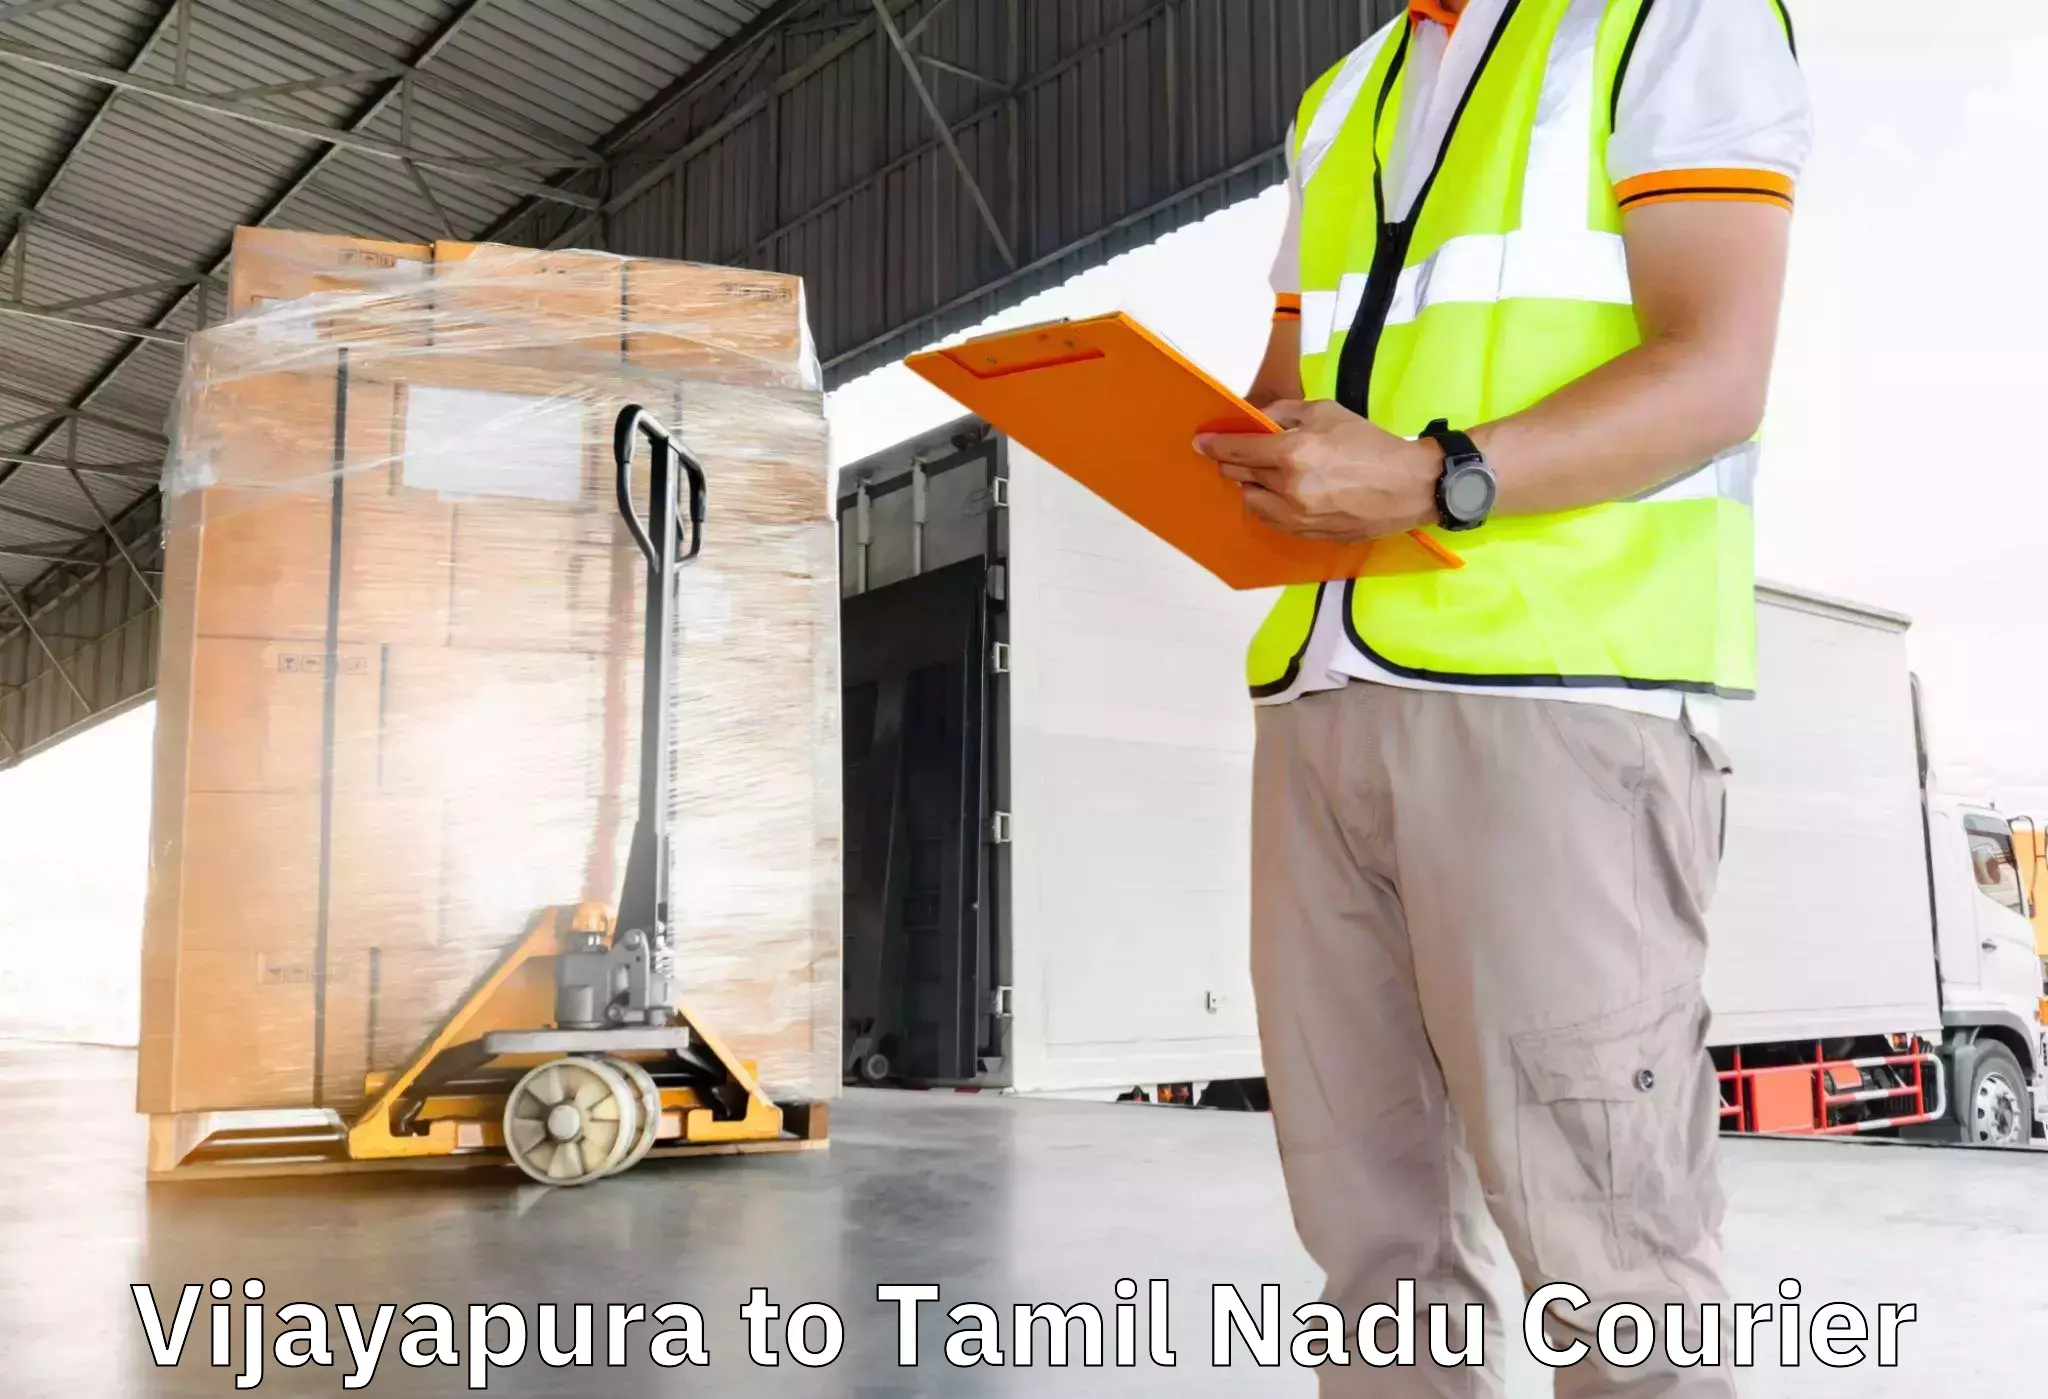 Furniture delivery service Vijayapura to Udumalpet